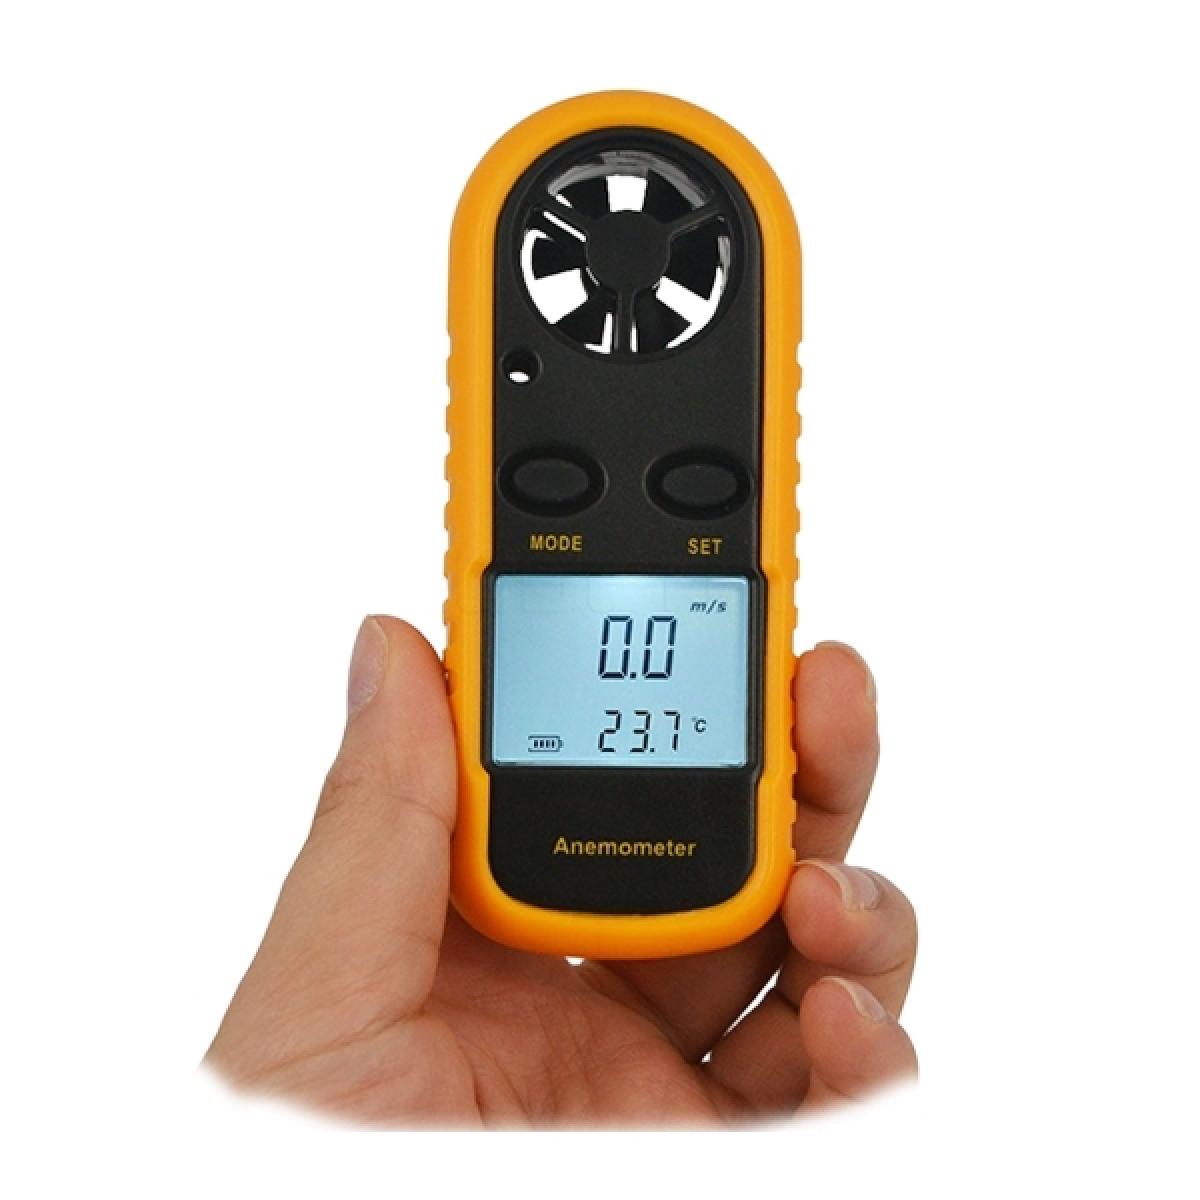 Totalcadeau - Anémomètre thérmomètre portatif vitesse du vent température - Jeux d'adresse